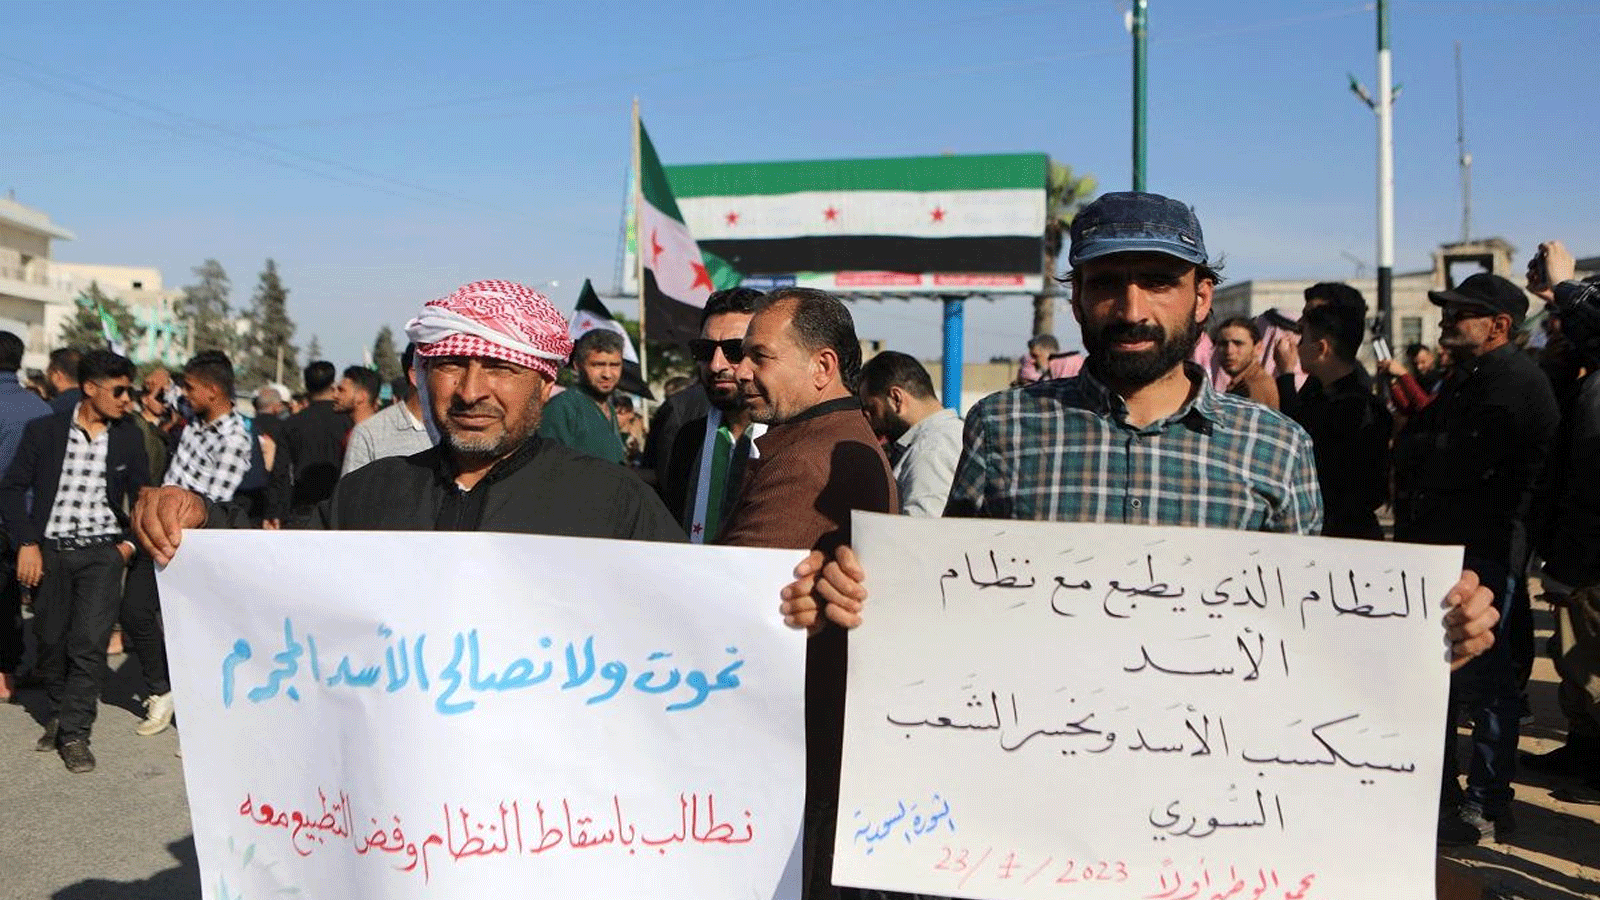 سوريون يتظاهرون في إدلب حاملين لا فتات تُندد بالتطبيع مع النظام السوري